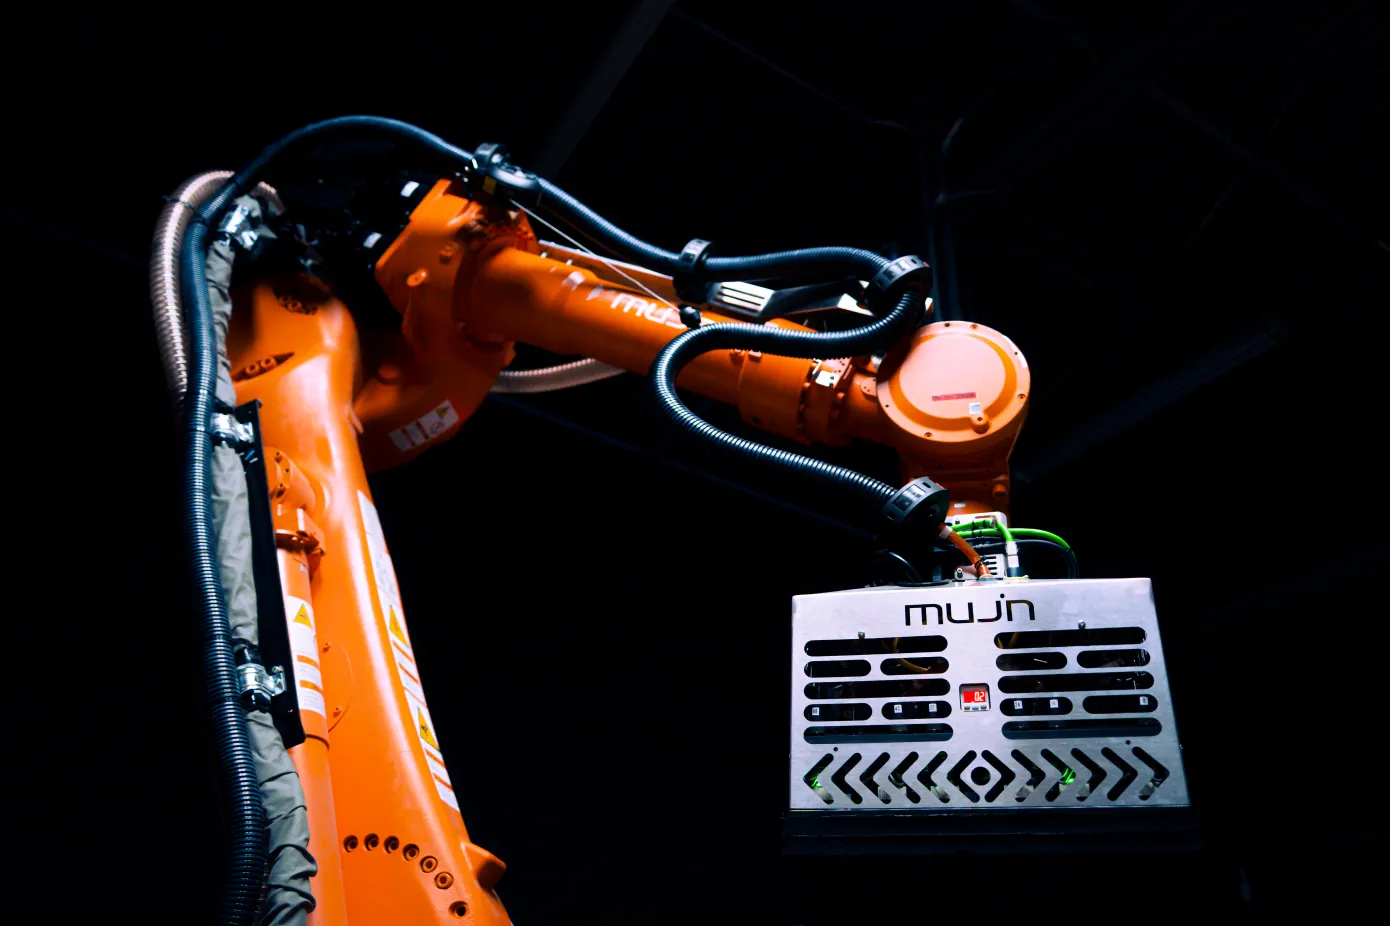 Lo sviluppatore di software per robot Mujin ha raccolto 85 milioni di dollari di finanziamenti